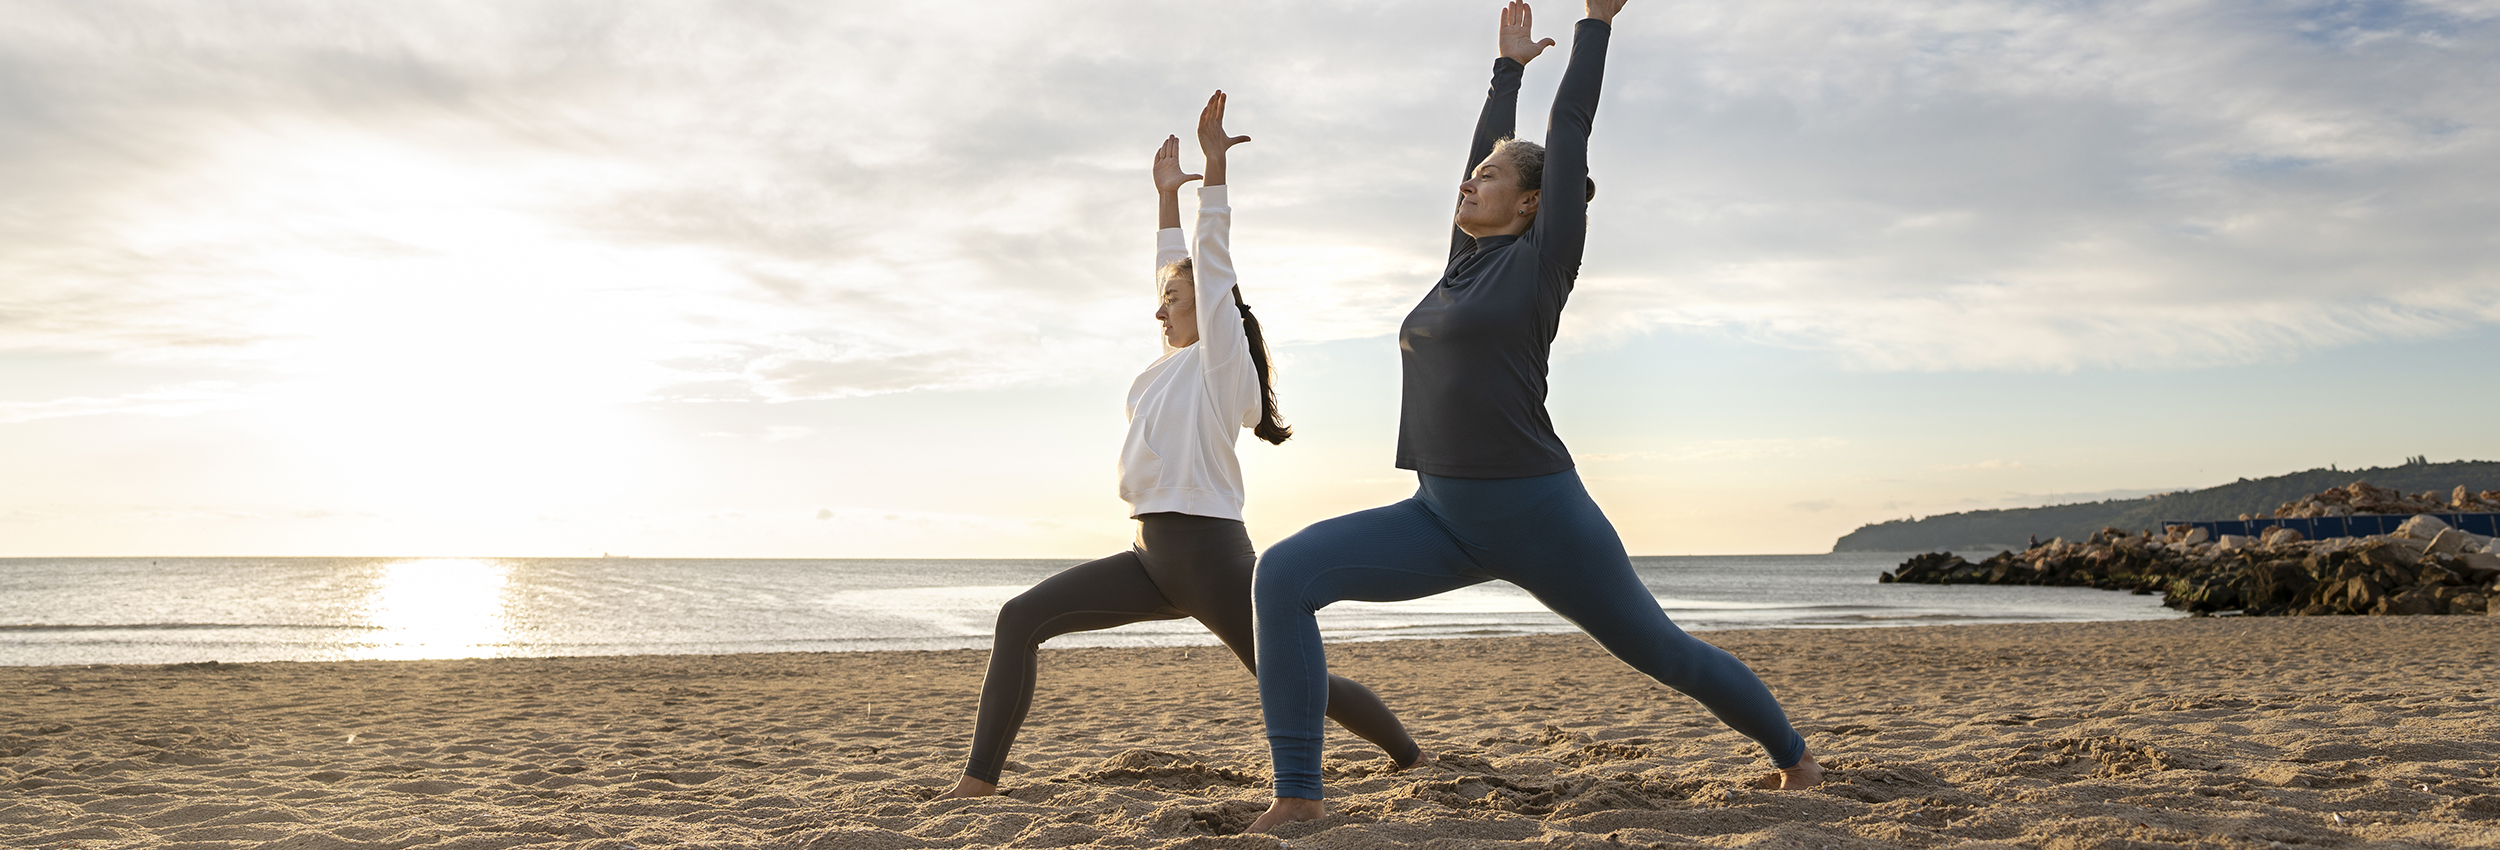 retiros de yoga en la playa de langre, cantabria